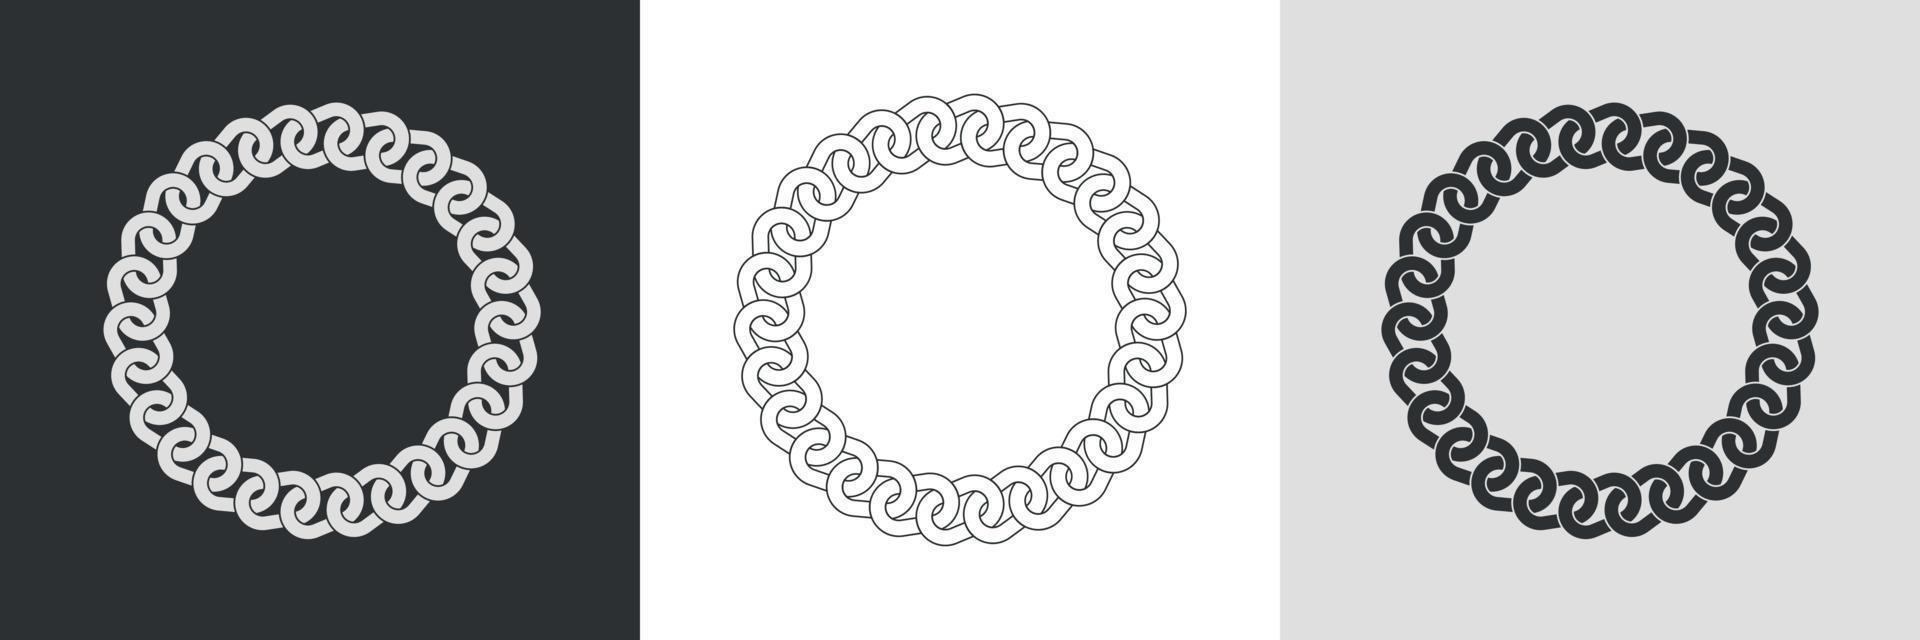 cadres ronds en chaîne. ensemble de silhouette de chaînes de bordure de cercle, dessin au trait et inversion. forme de cercle de couronne sans soudure. conception de bijoux, cadre de texte. illustration vectorielle vecteur